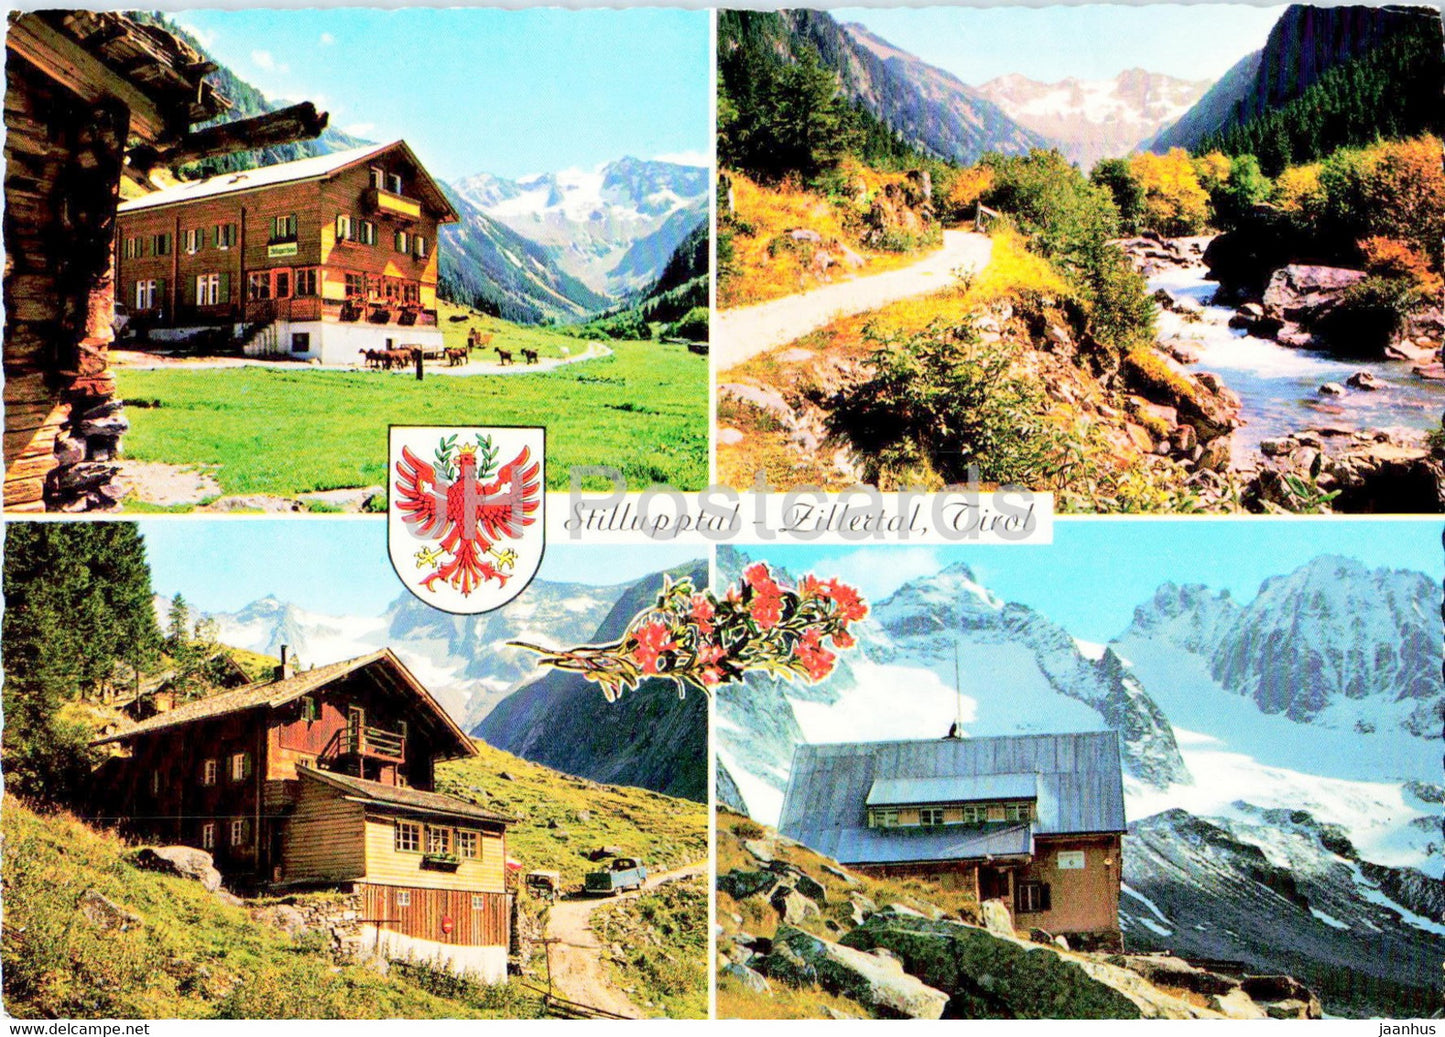 Stillupptal - Zillertal - Tirol - Stillupper Haus - Kasseler Hutte - Austria - unused - JH Postcards